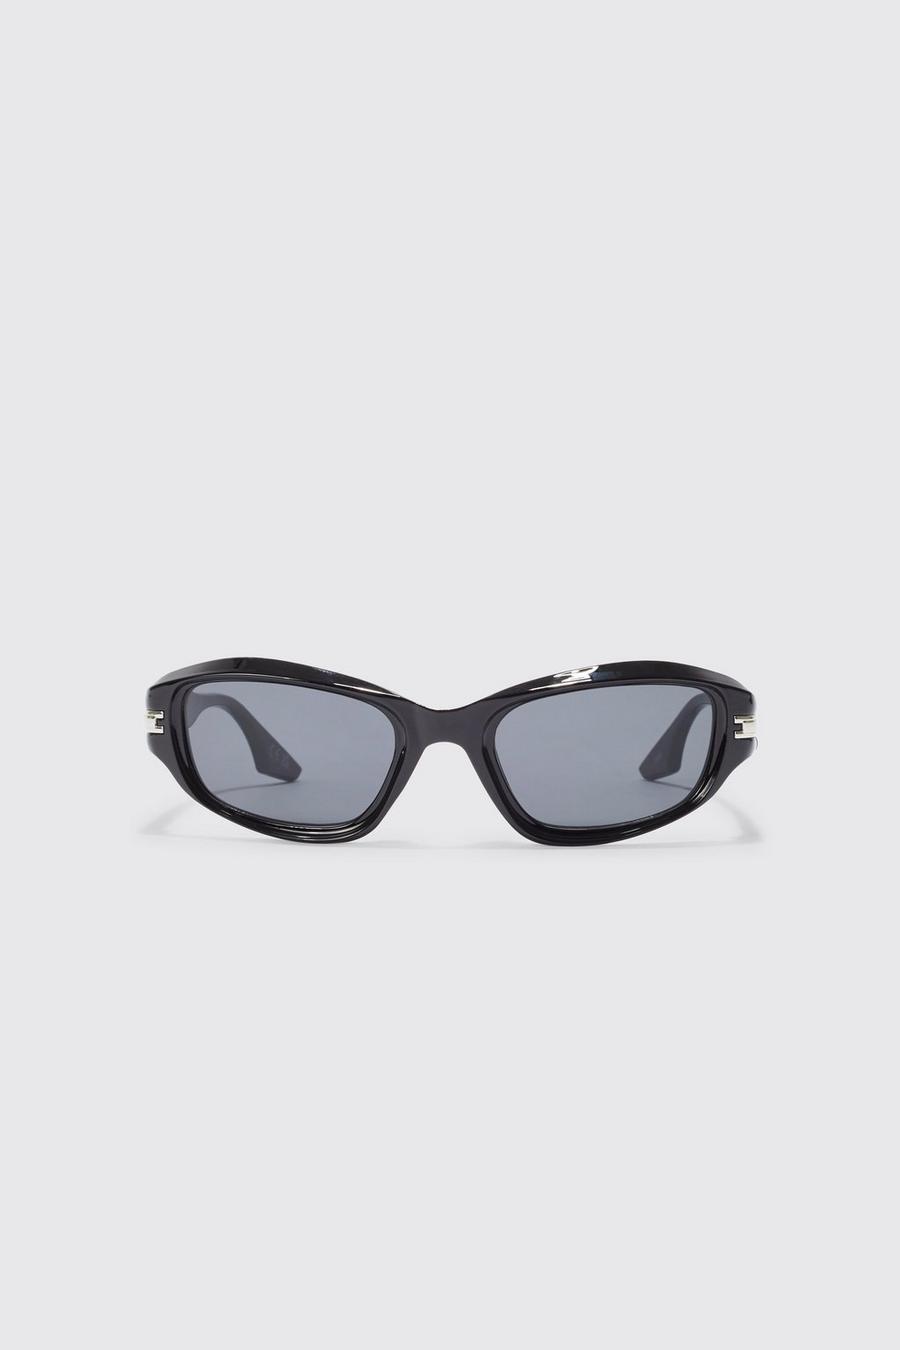 Gafas de sol con lentes inclinadas, Black negro